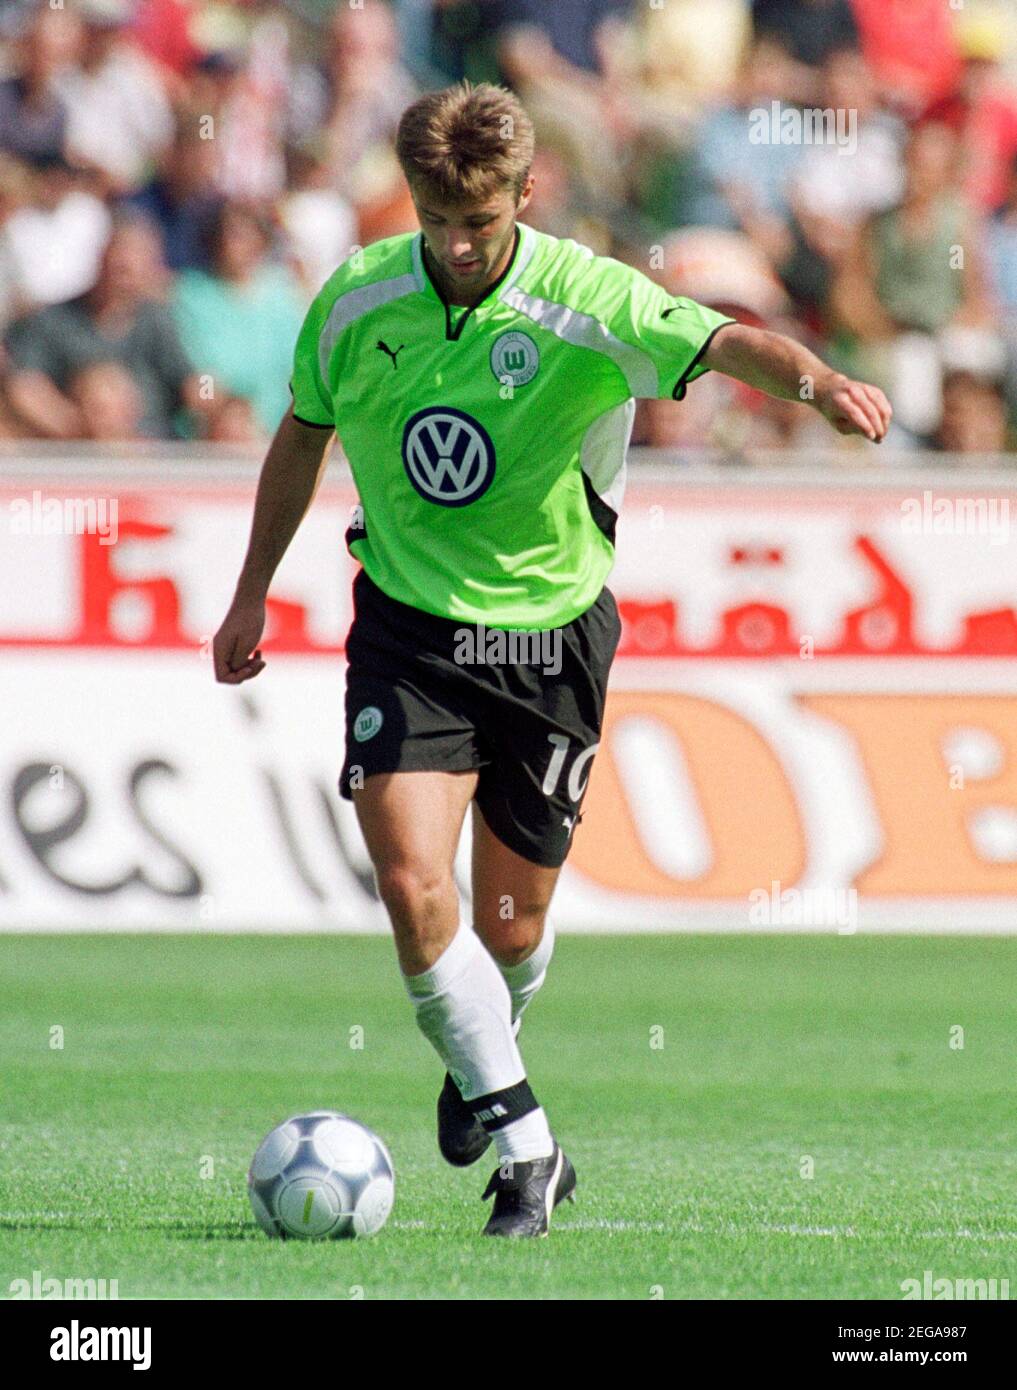 Eintracht Frankfurt Programm 2000/01 Bayer 04 Leverkusen 